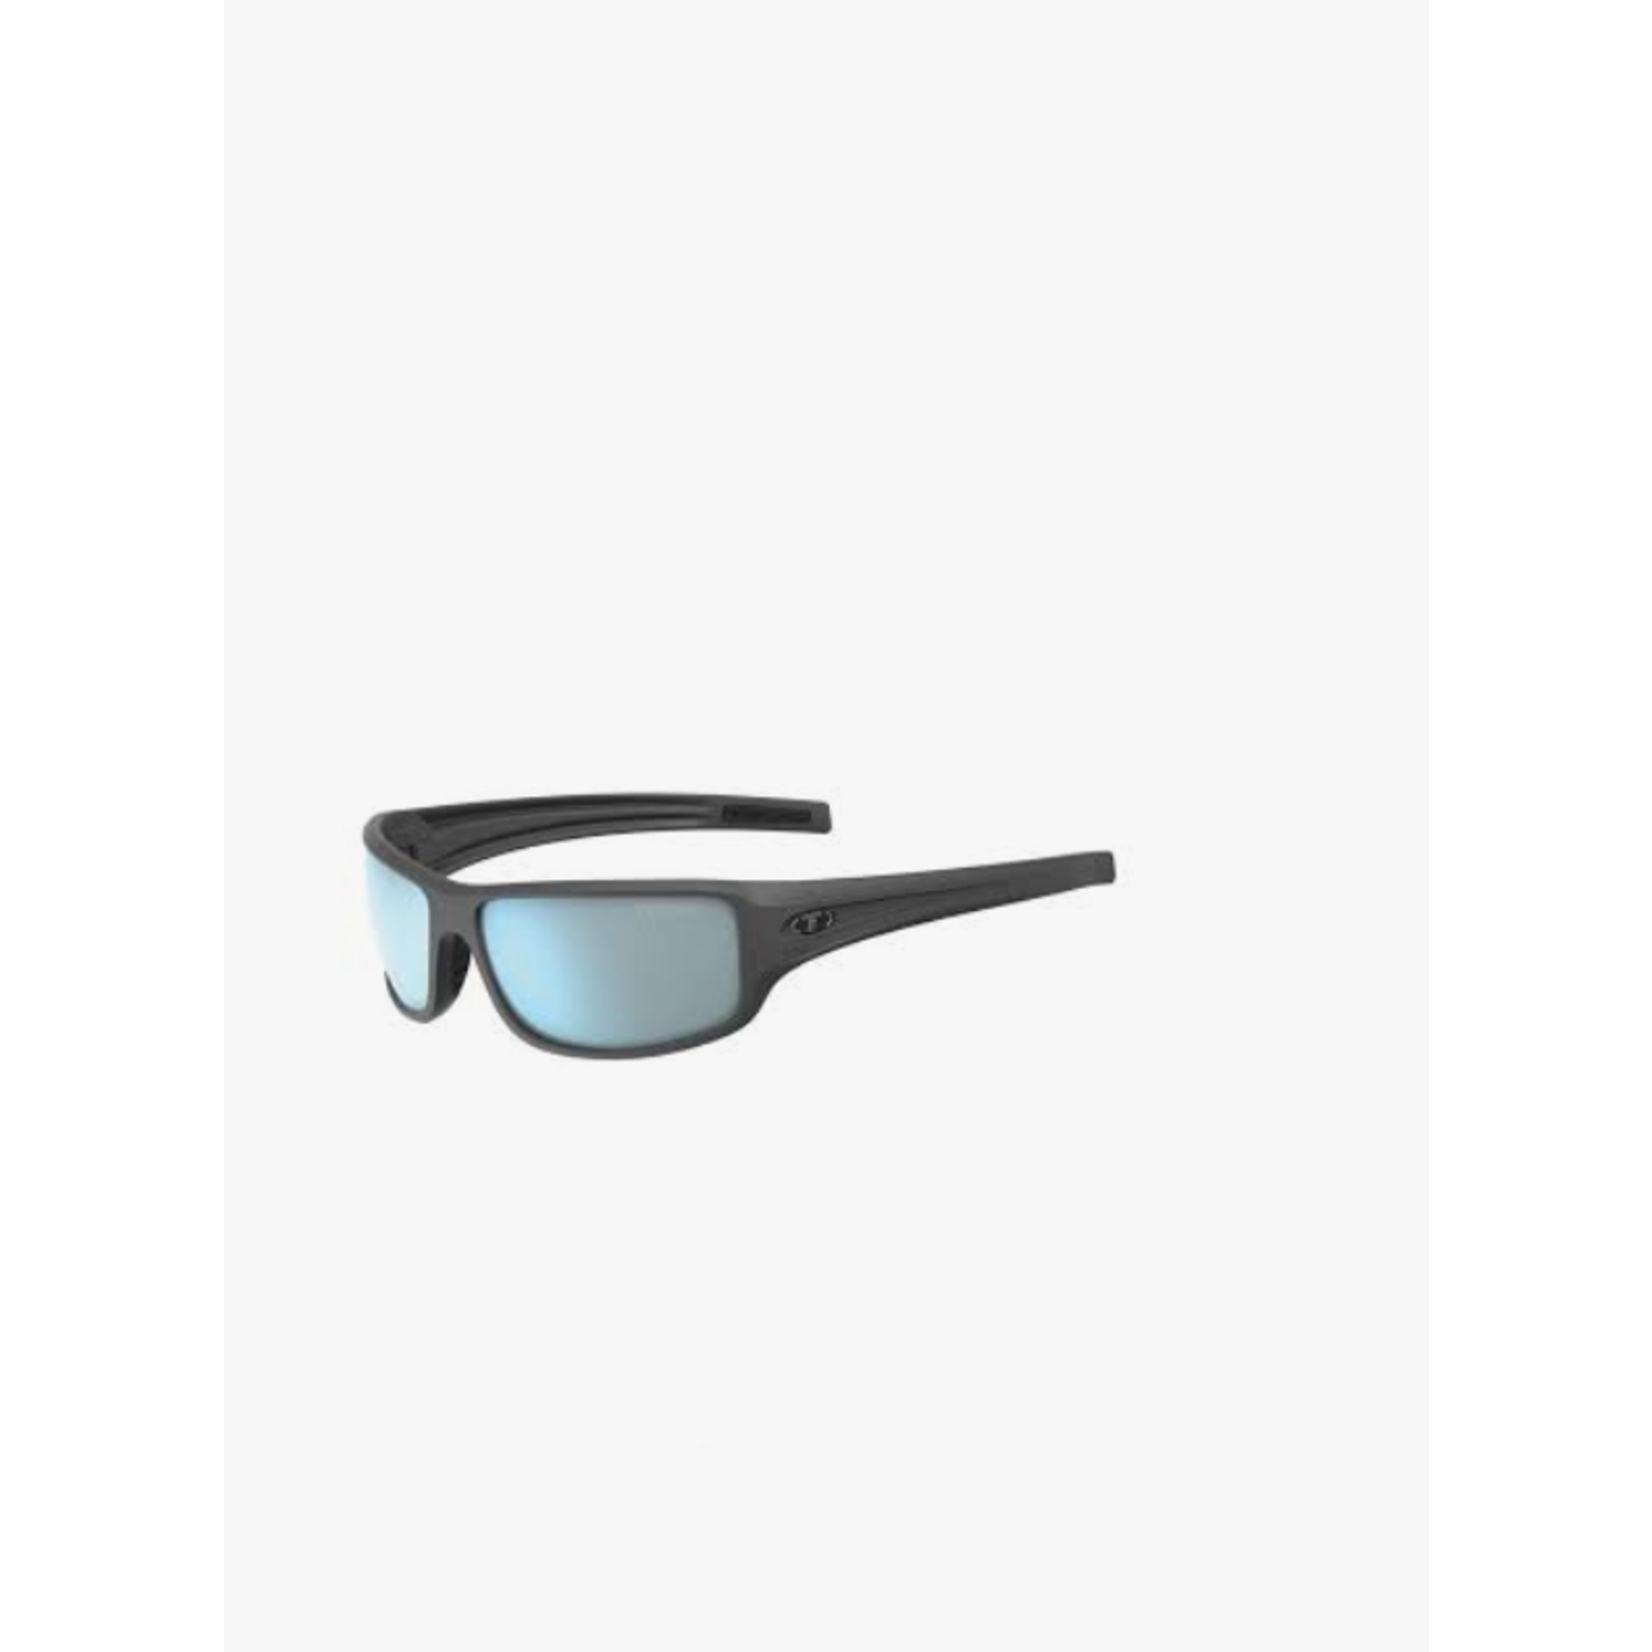 Elder SL, Matte Black Single Lens Sunglasses Enliven Golf